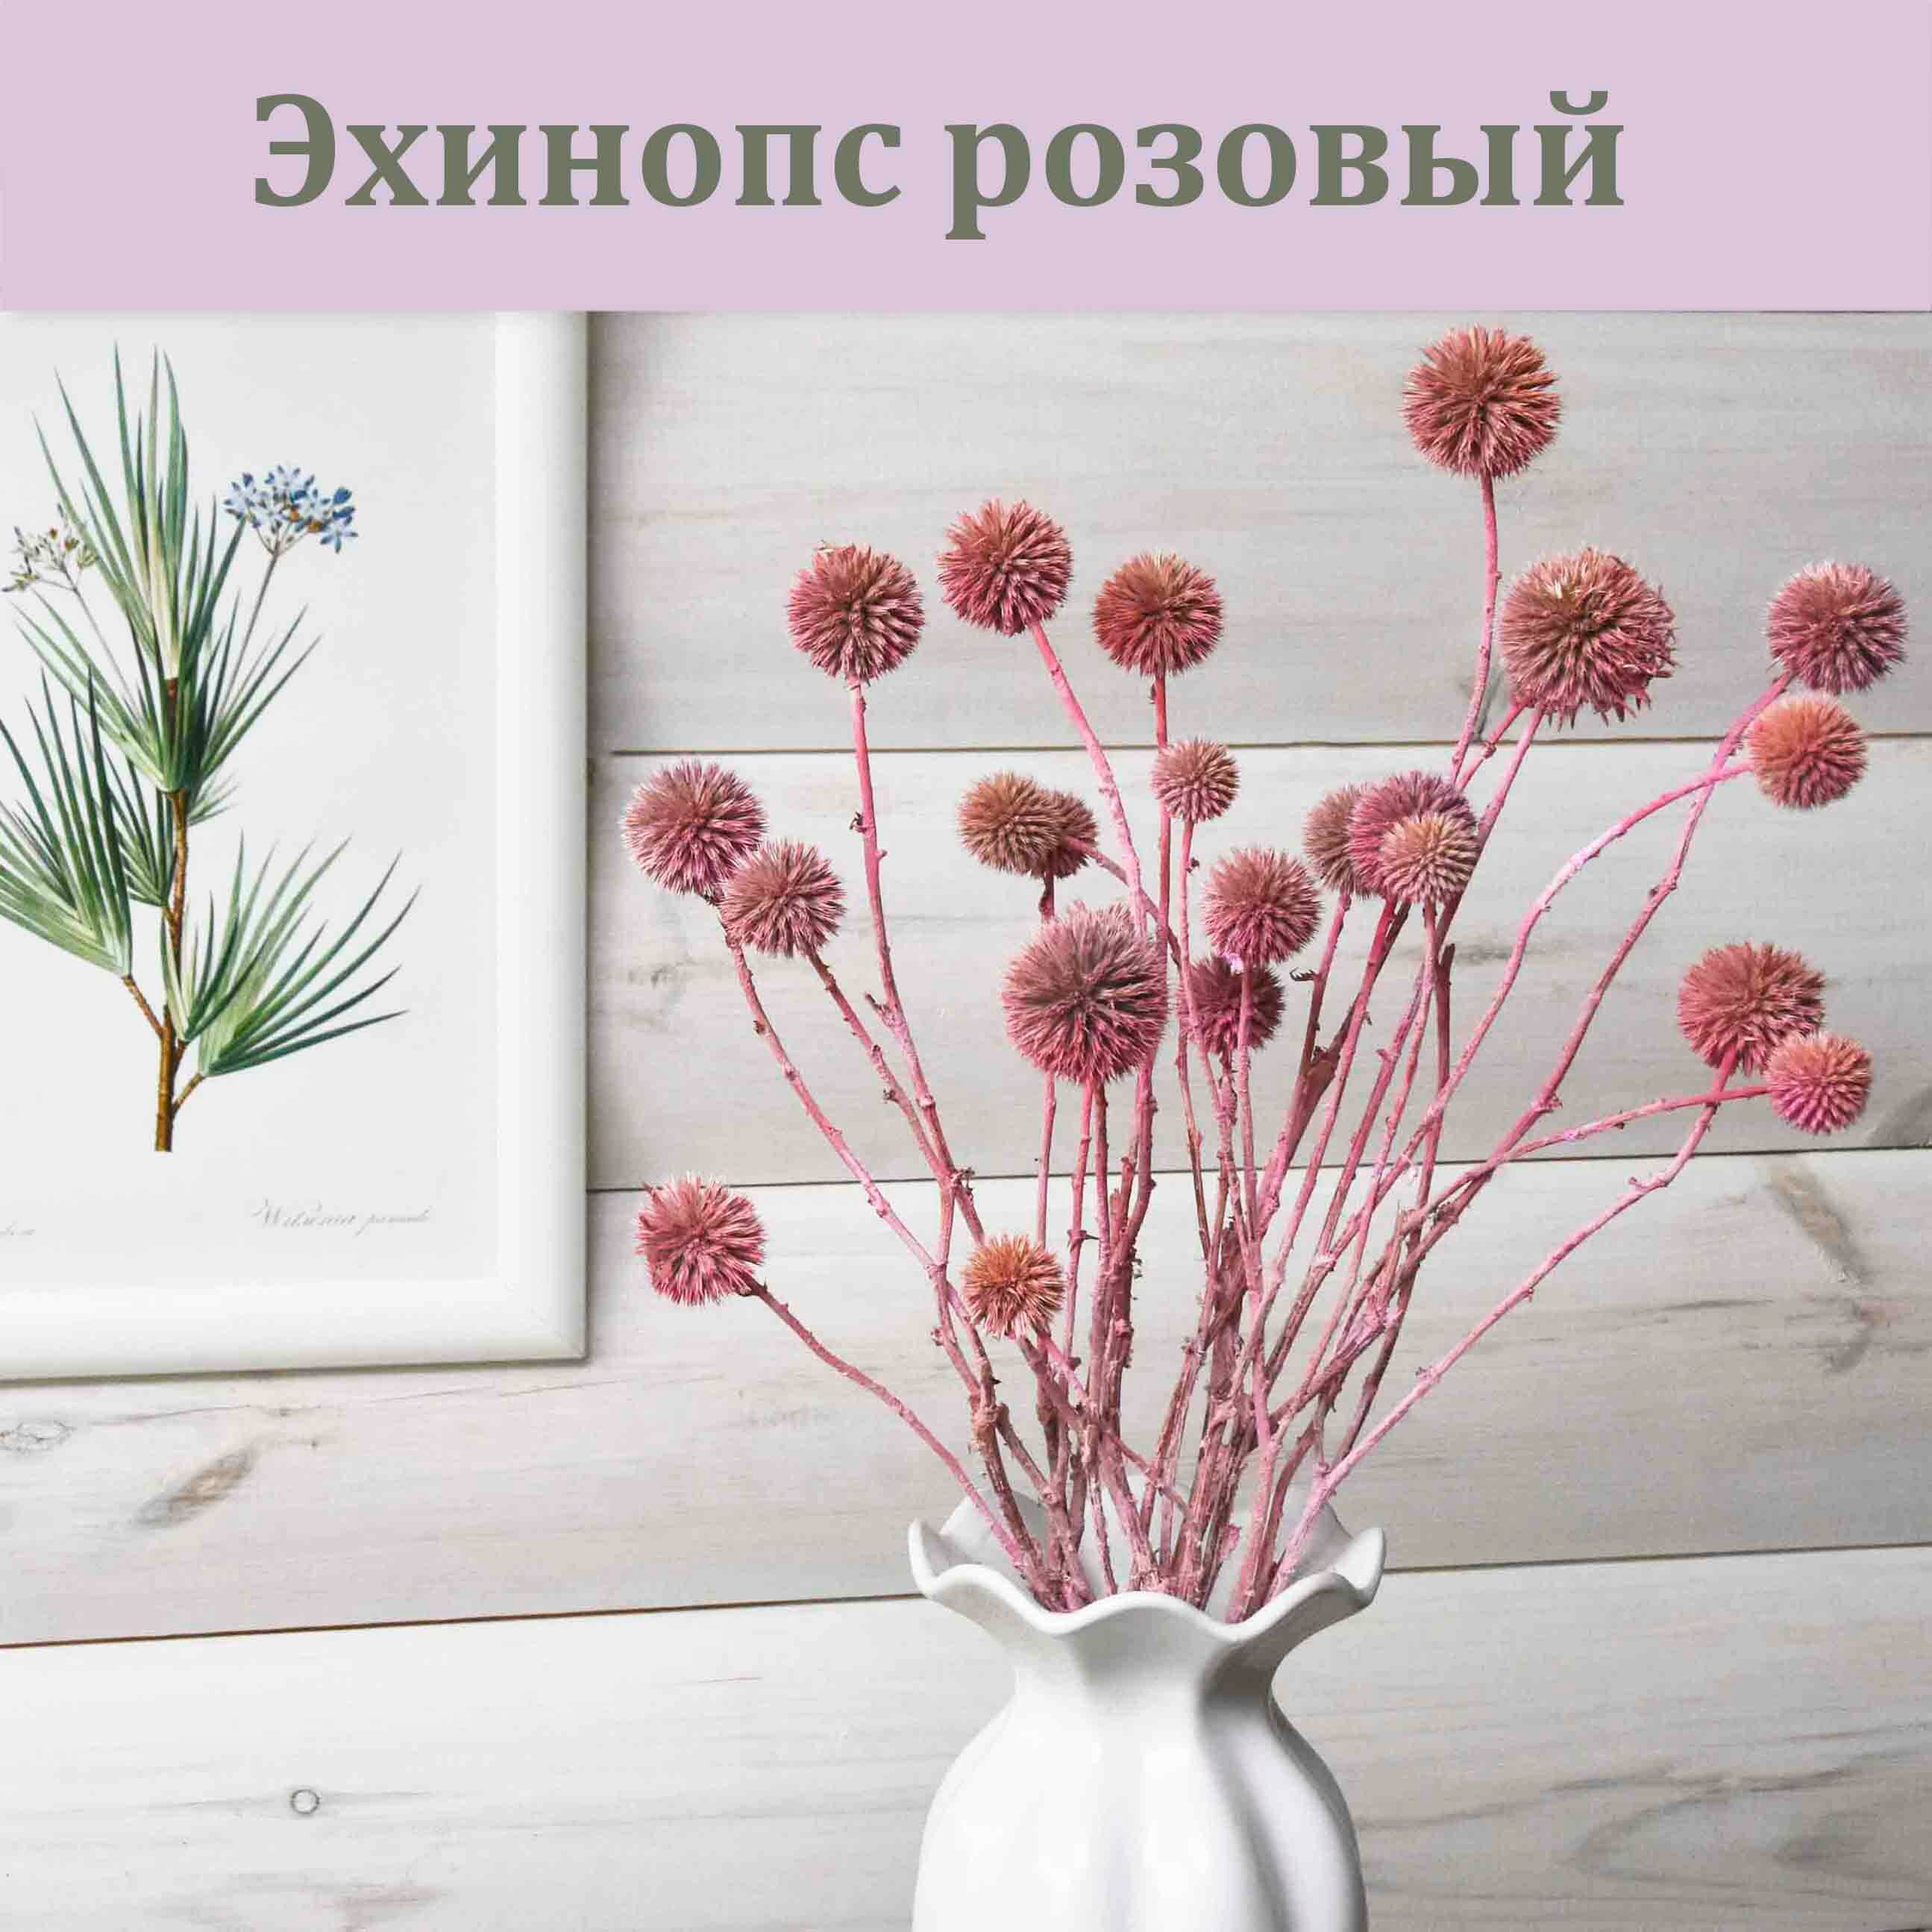 Эхинопс розовый (сухоцвет) / Букет для интерьера / Сухоцветы для декора